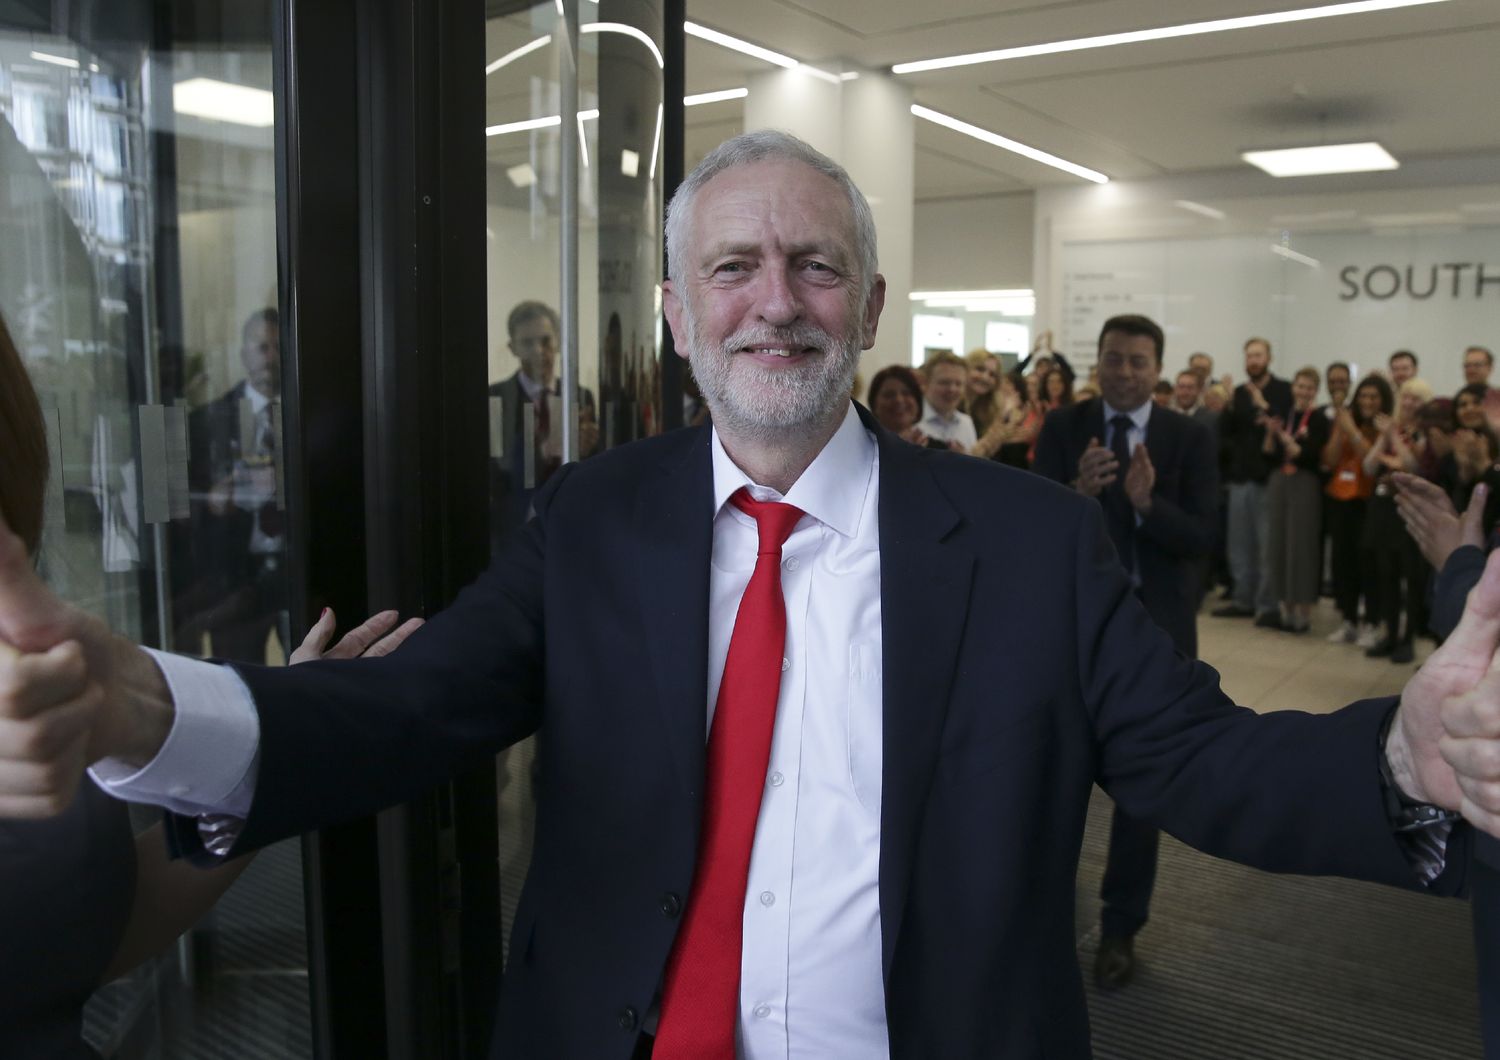 &nbsp; Jeremy Corbyn gives festeggia la vittoria presso la sede del partito laburista&nbsp;